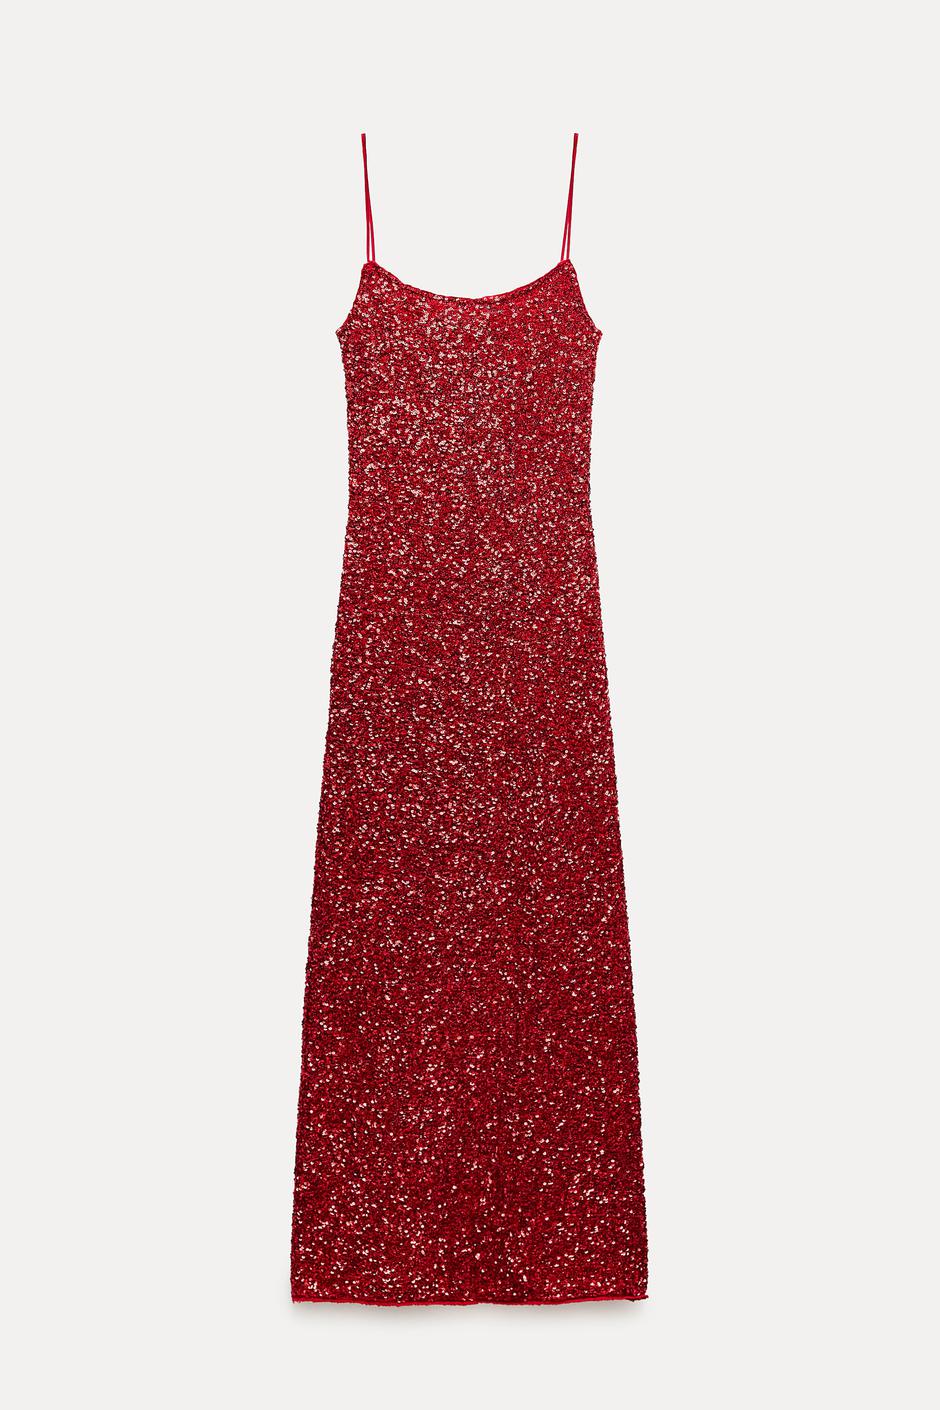 Foto: Zara, duga crvena haljina sa šljokicama (59,95 eura) | Autor: 